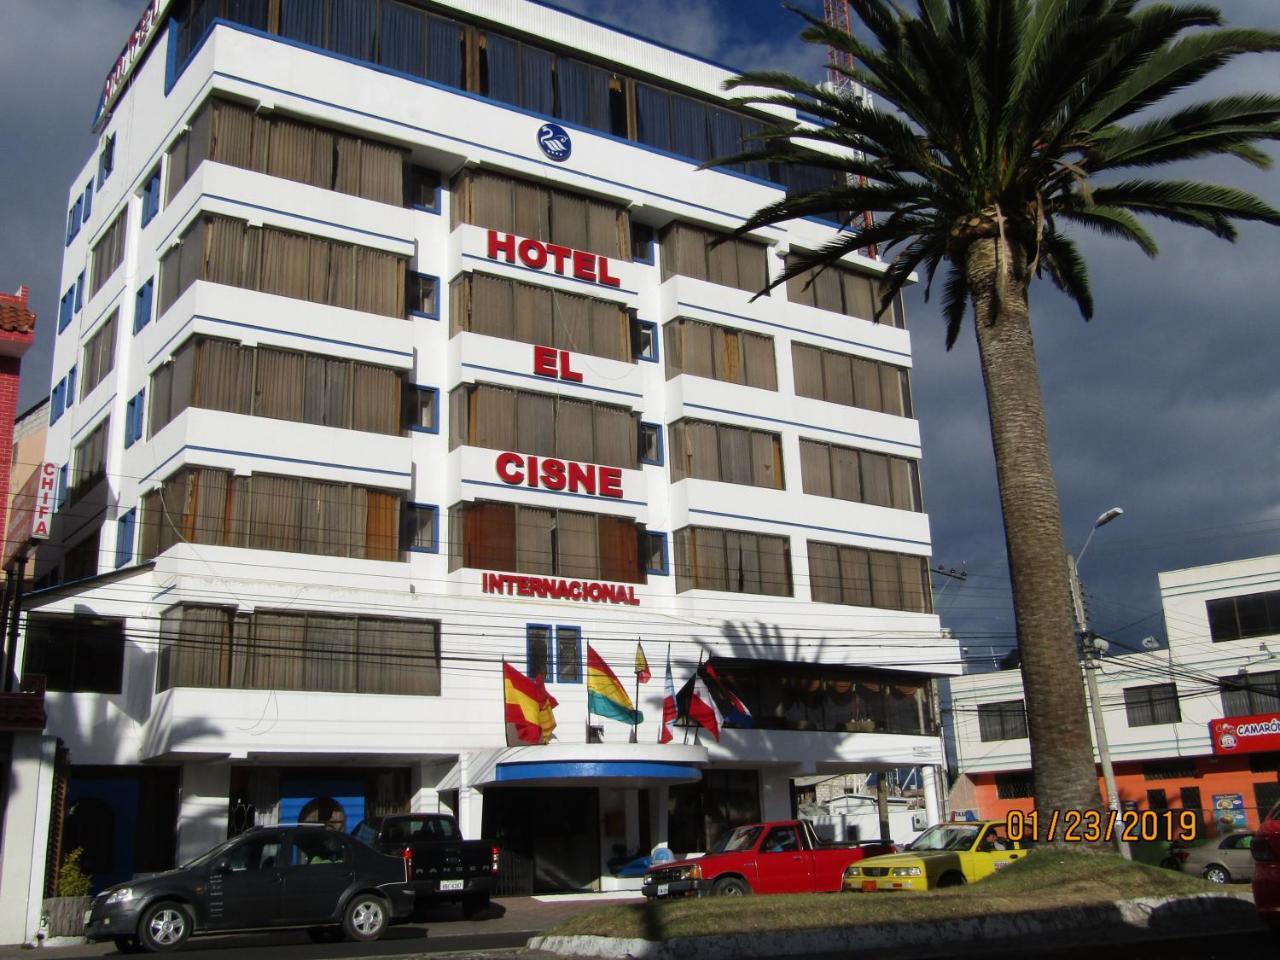 plan de ventas tener insecto HOTEL EL CISNE RIOBAMBA (Ecuador) - desde 34 € | HOTELMIX